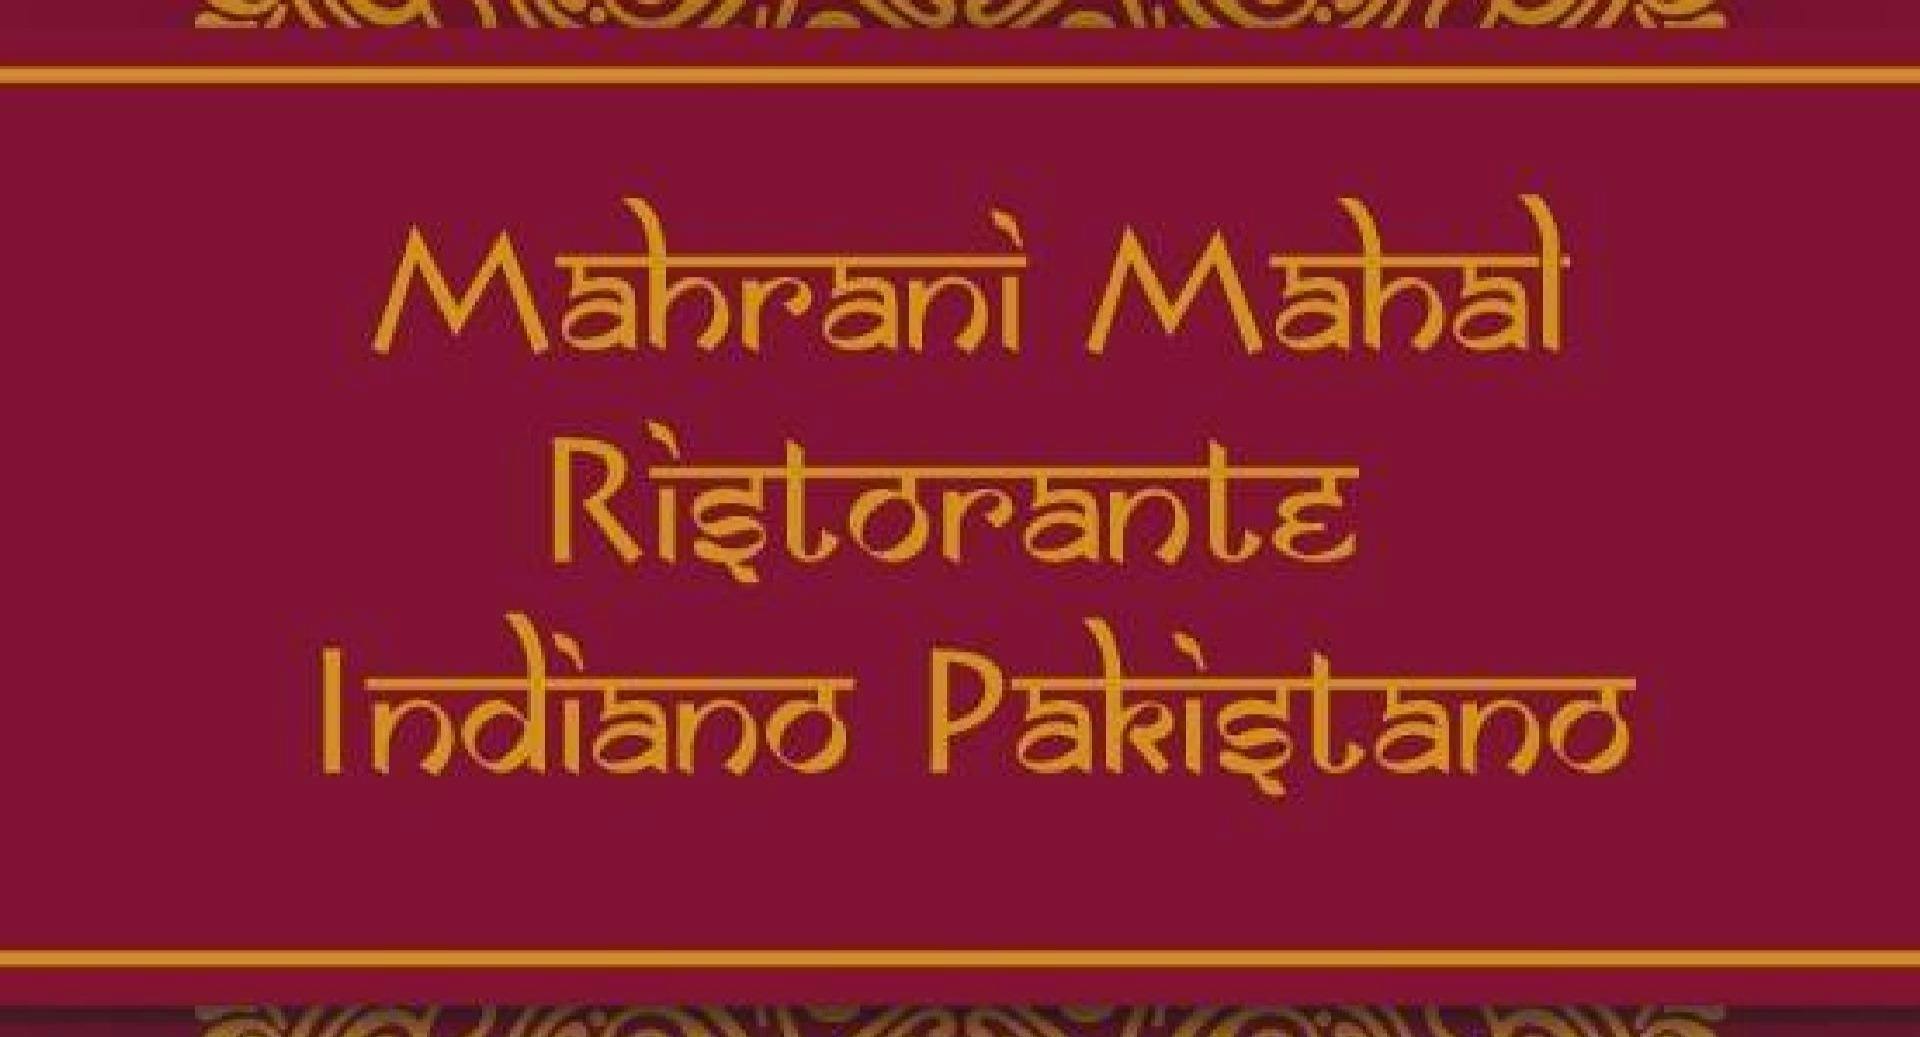 Photo of restaurant Mahrani Mahal in Cimiano, Milan